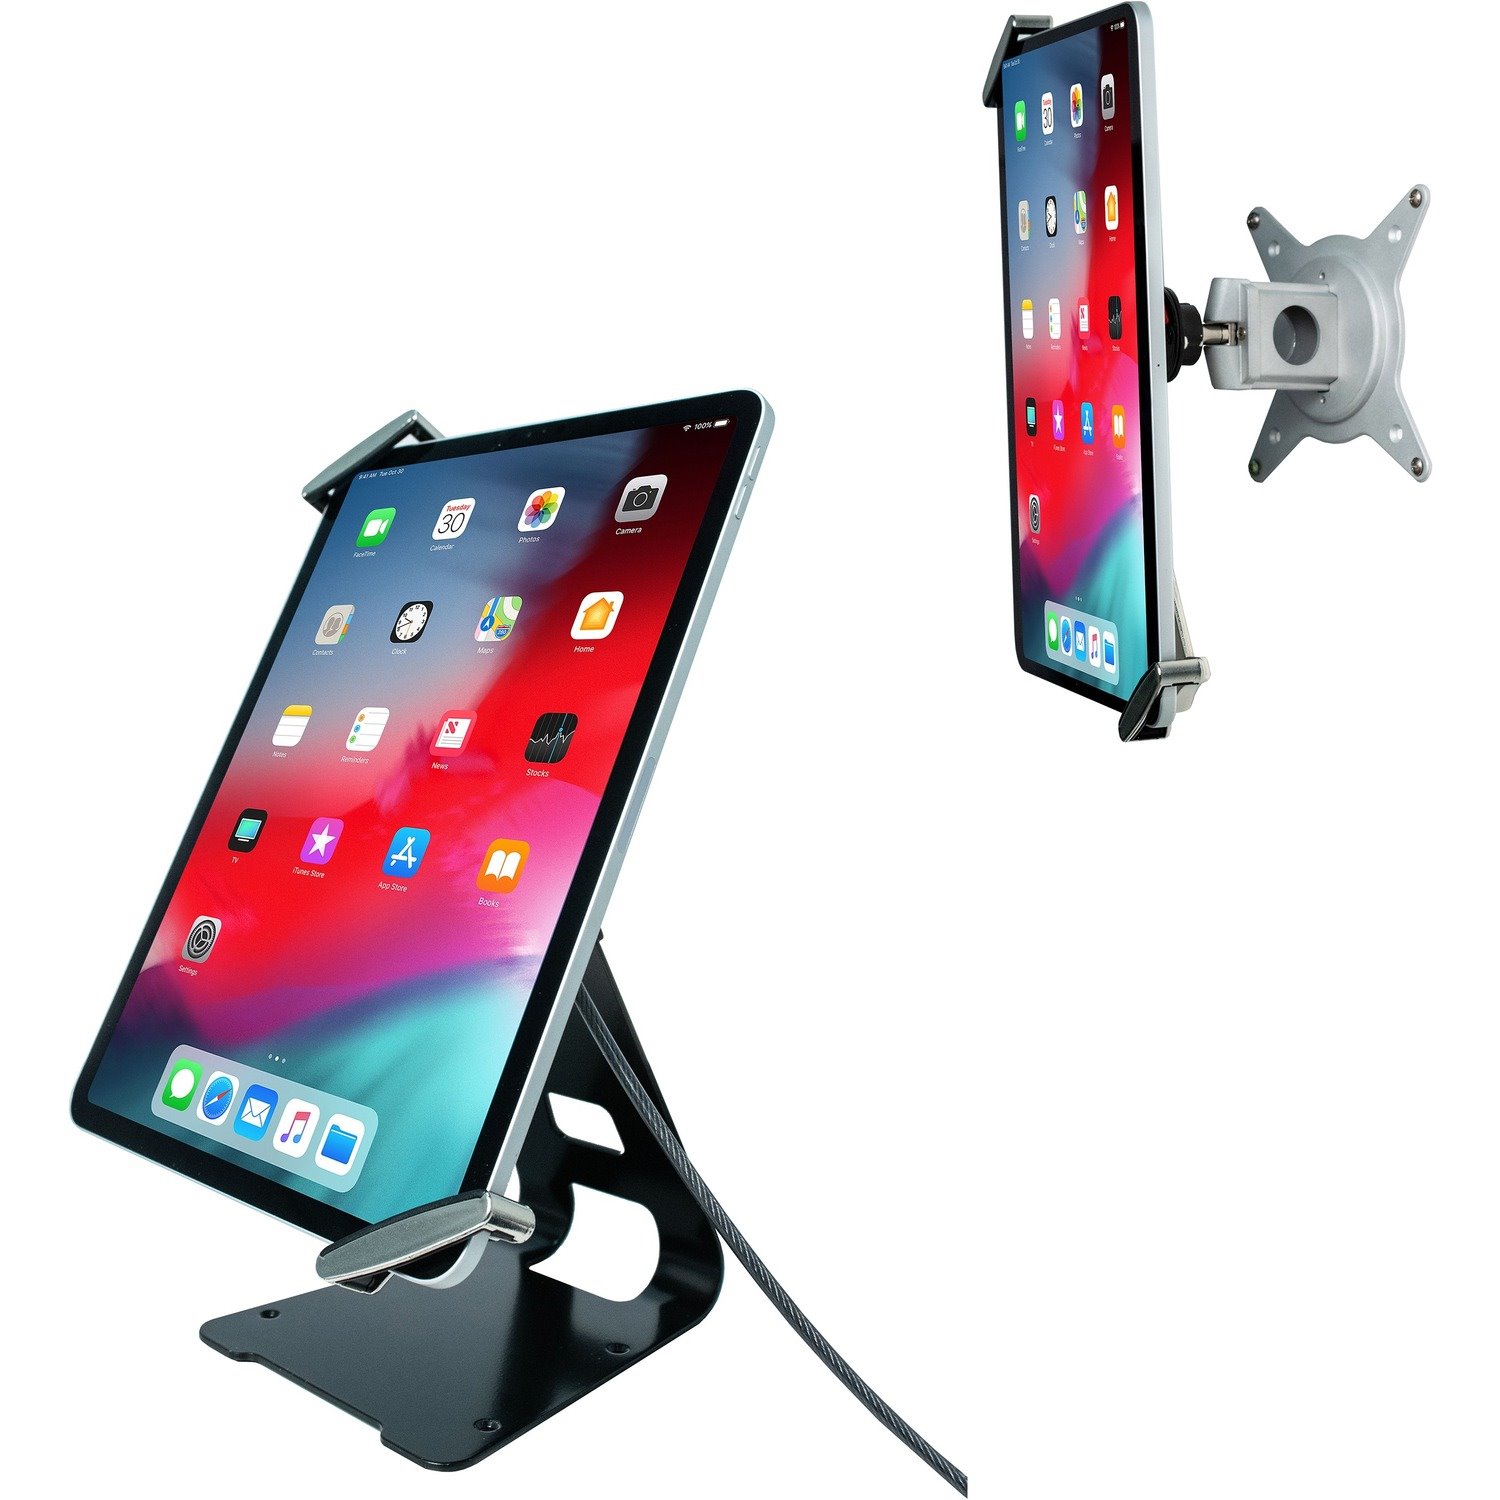 CTA Digital Desktop/Wall Mount for Tablet, iPad (7th Generation), iPad Pro, iPad mini, iPad (6th Generation)